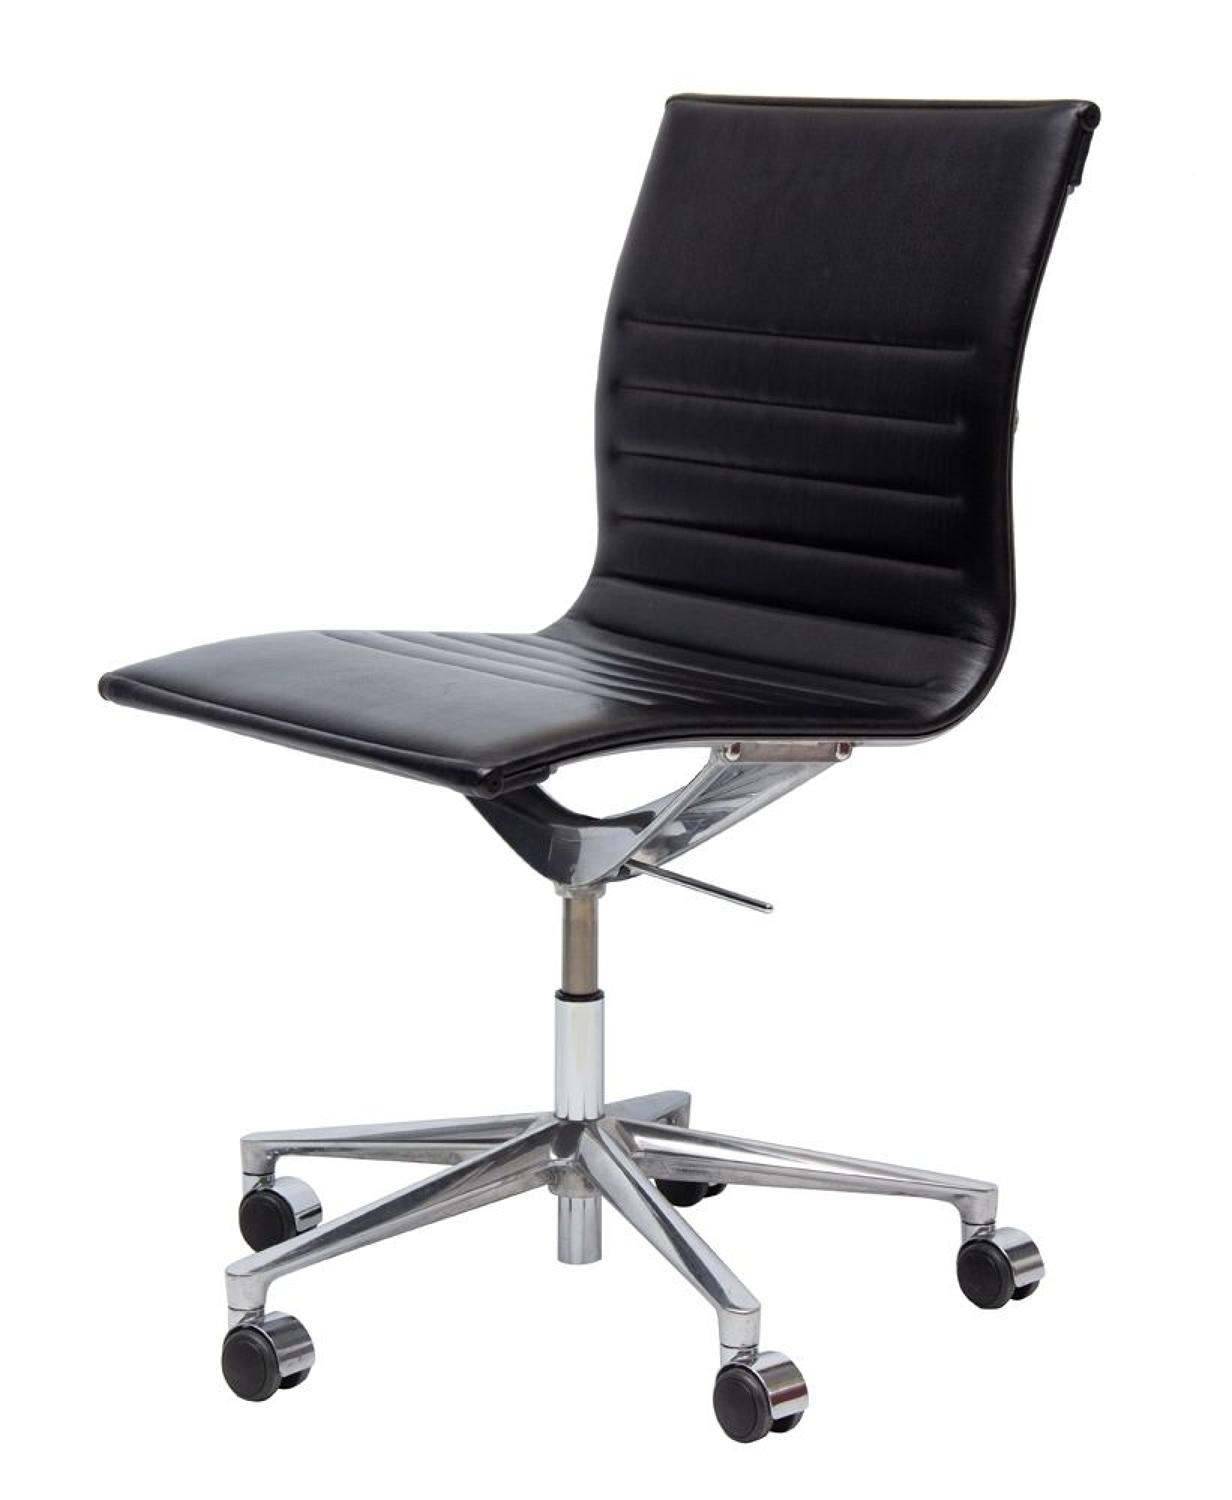 Icaf Italian Leather & Cast Aluminium Desk Chair